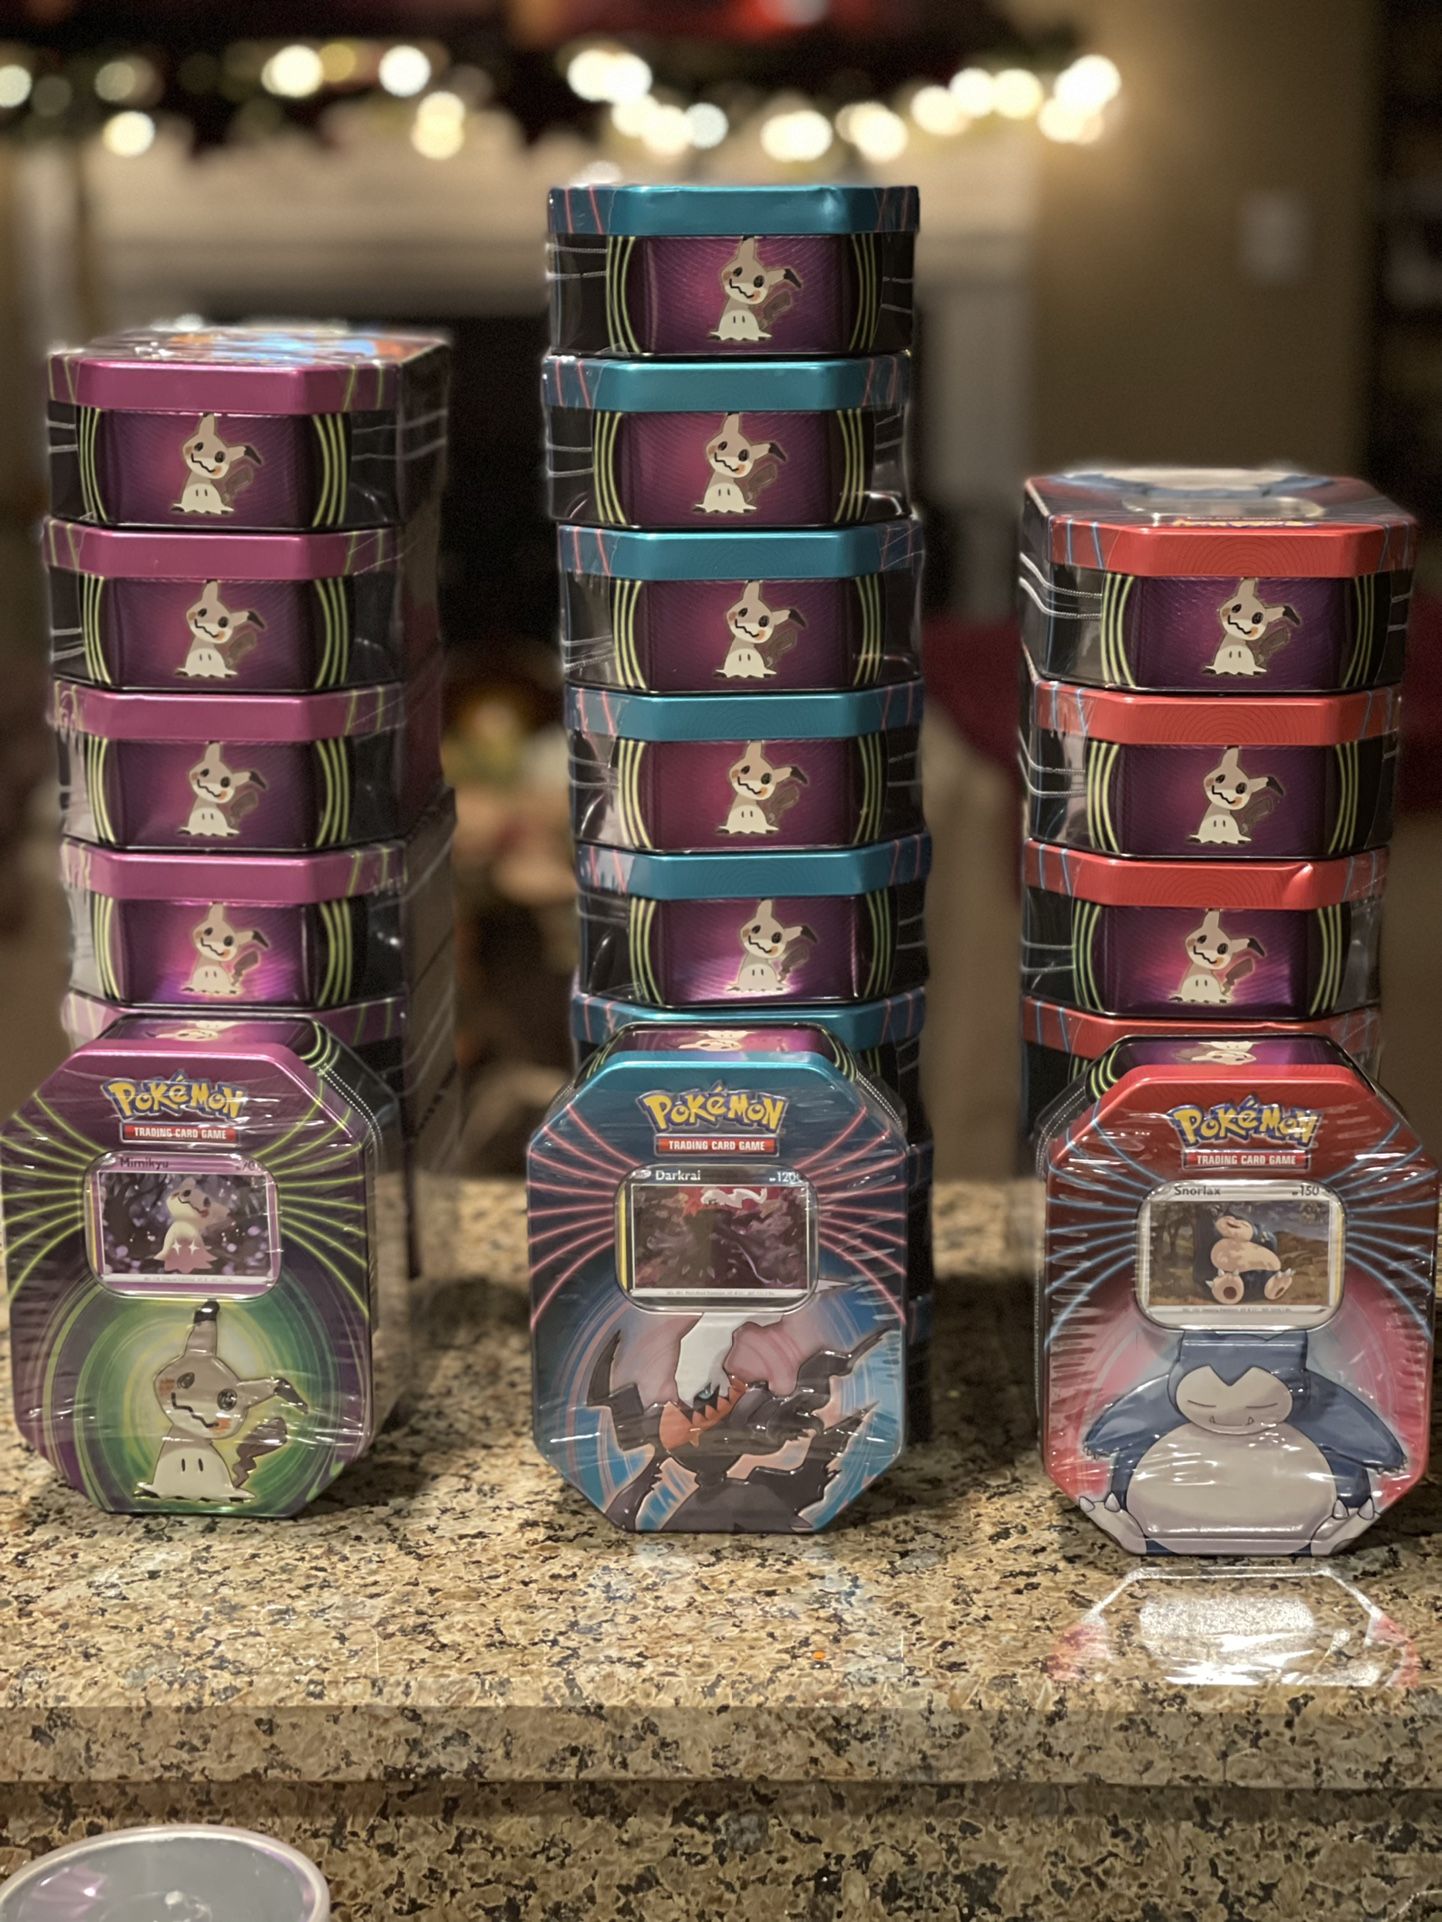 Pokémon knockout tins—Complete sets